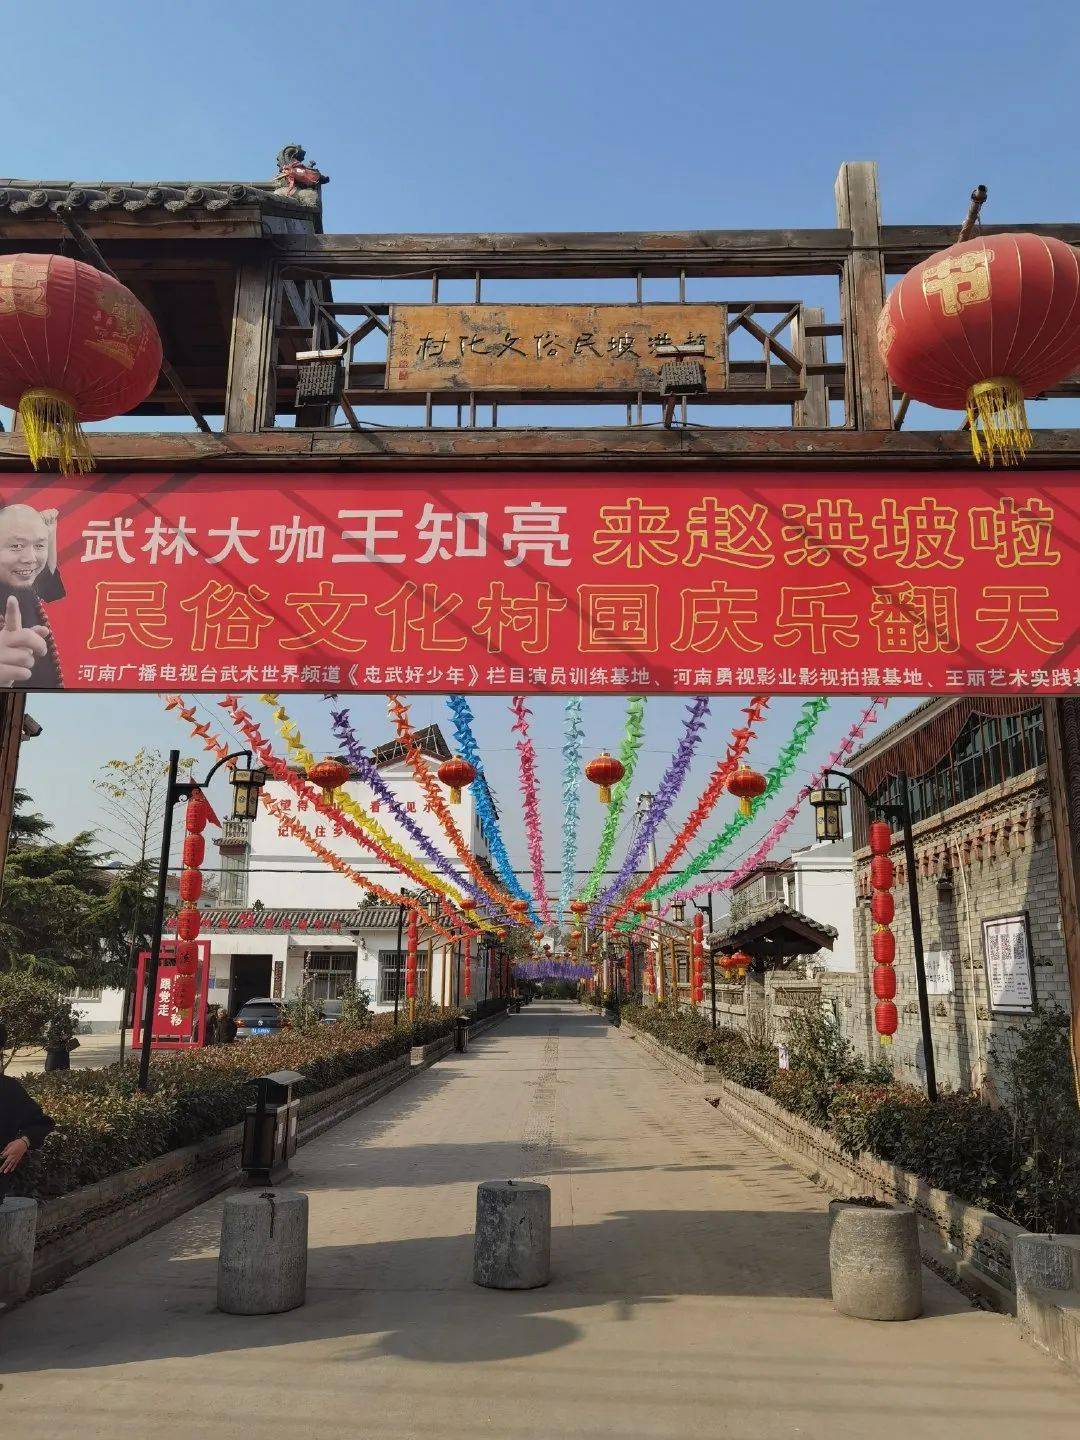 赵洪坡民俗文化旅游村图片